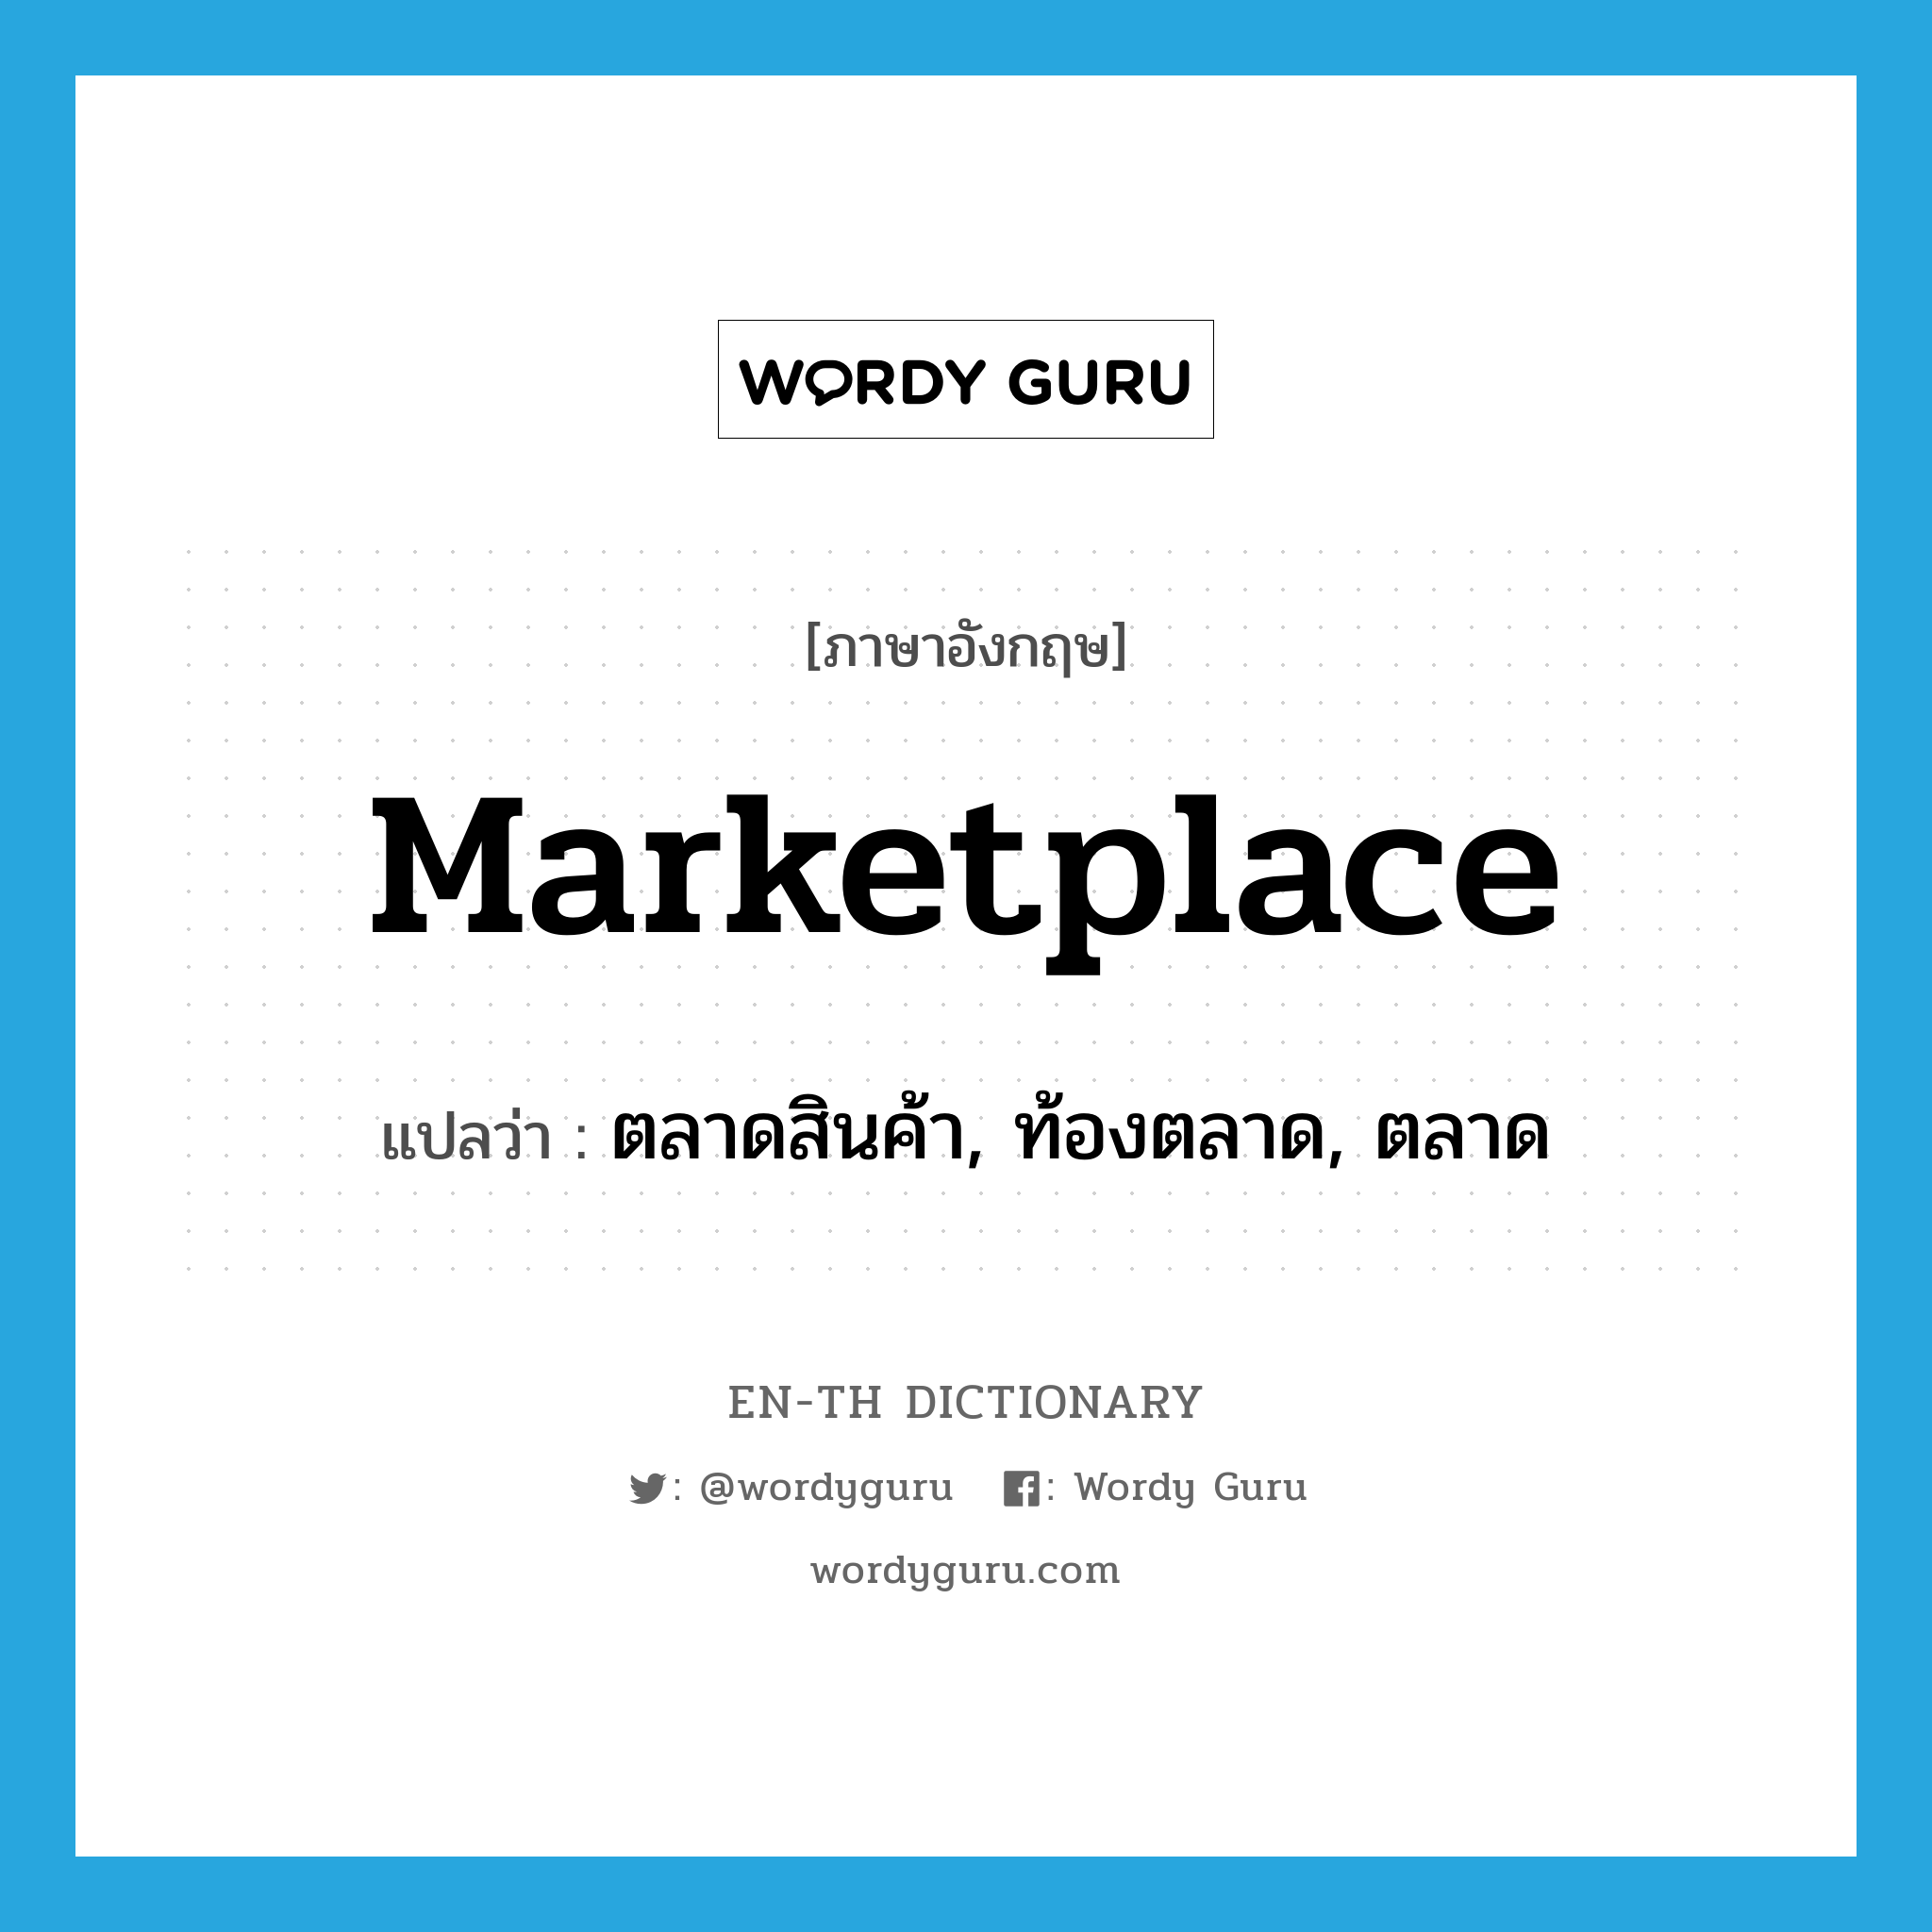 marketplace แปลว่า?, คำศัพท์ภาษาอังกฤษ marketplace แปลว่า ตลาดสินค้า, ท้องตลาด, ตลาด ประเภท N หมวด N